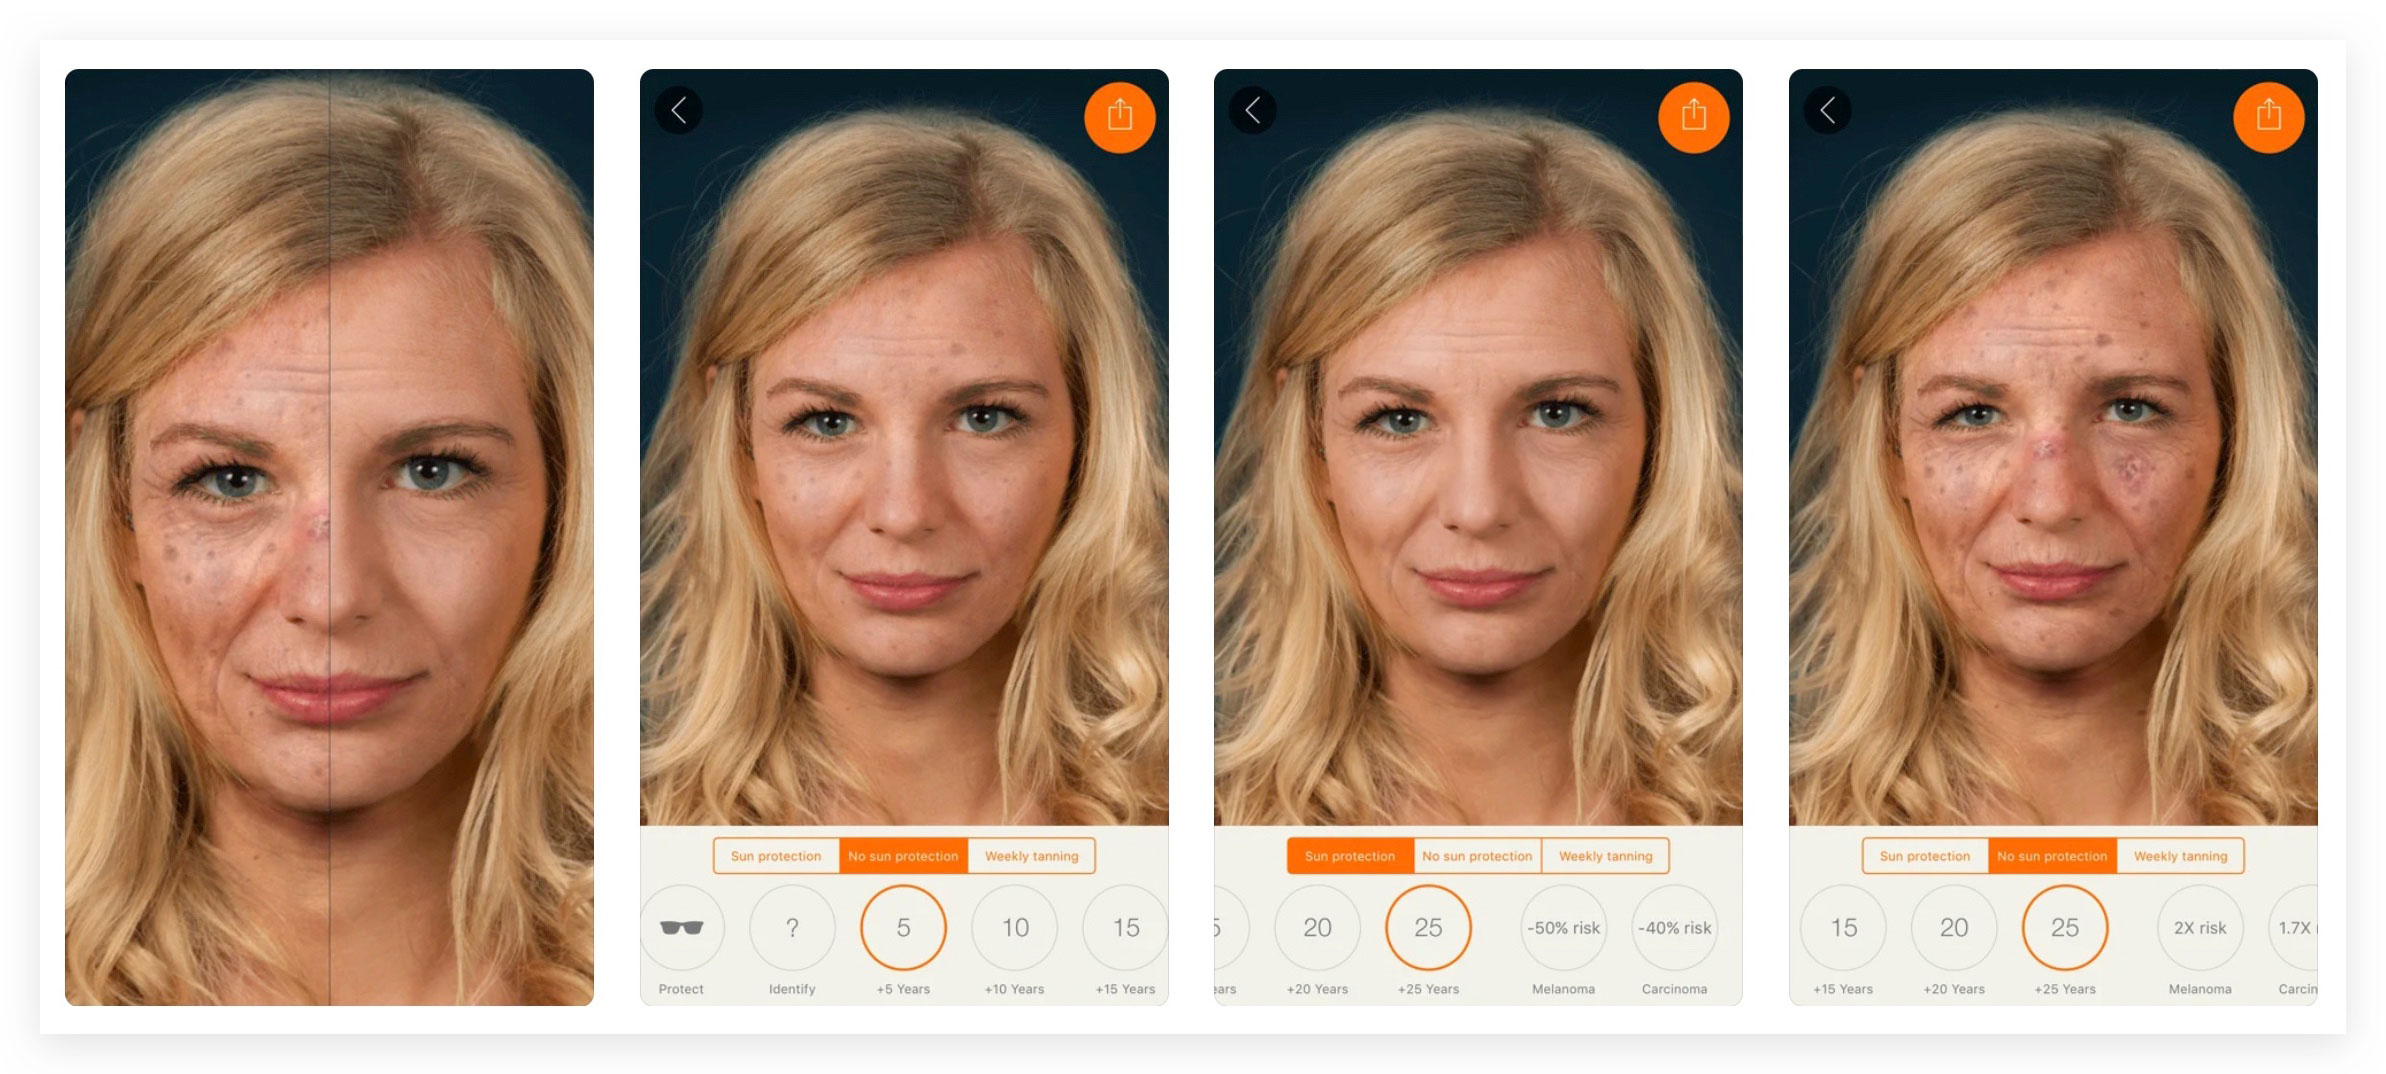 https://www.macfreak.nl/modules/news/images/zArt.Sunface-UV-SelfieInterface.jpg